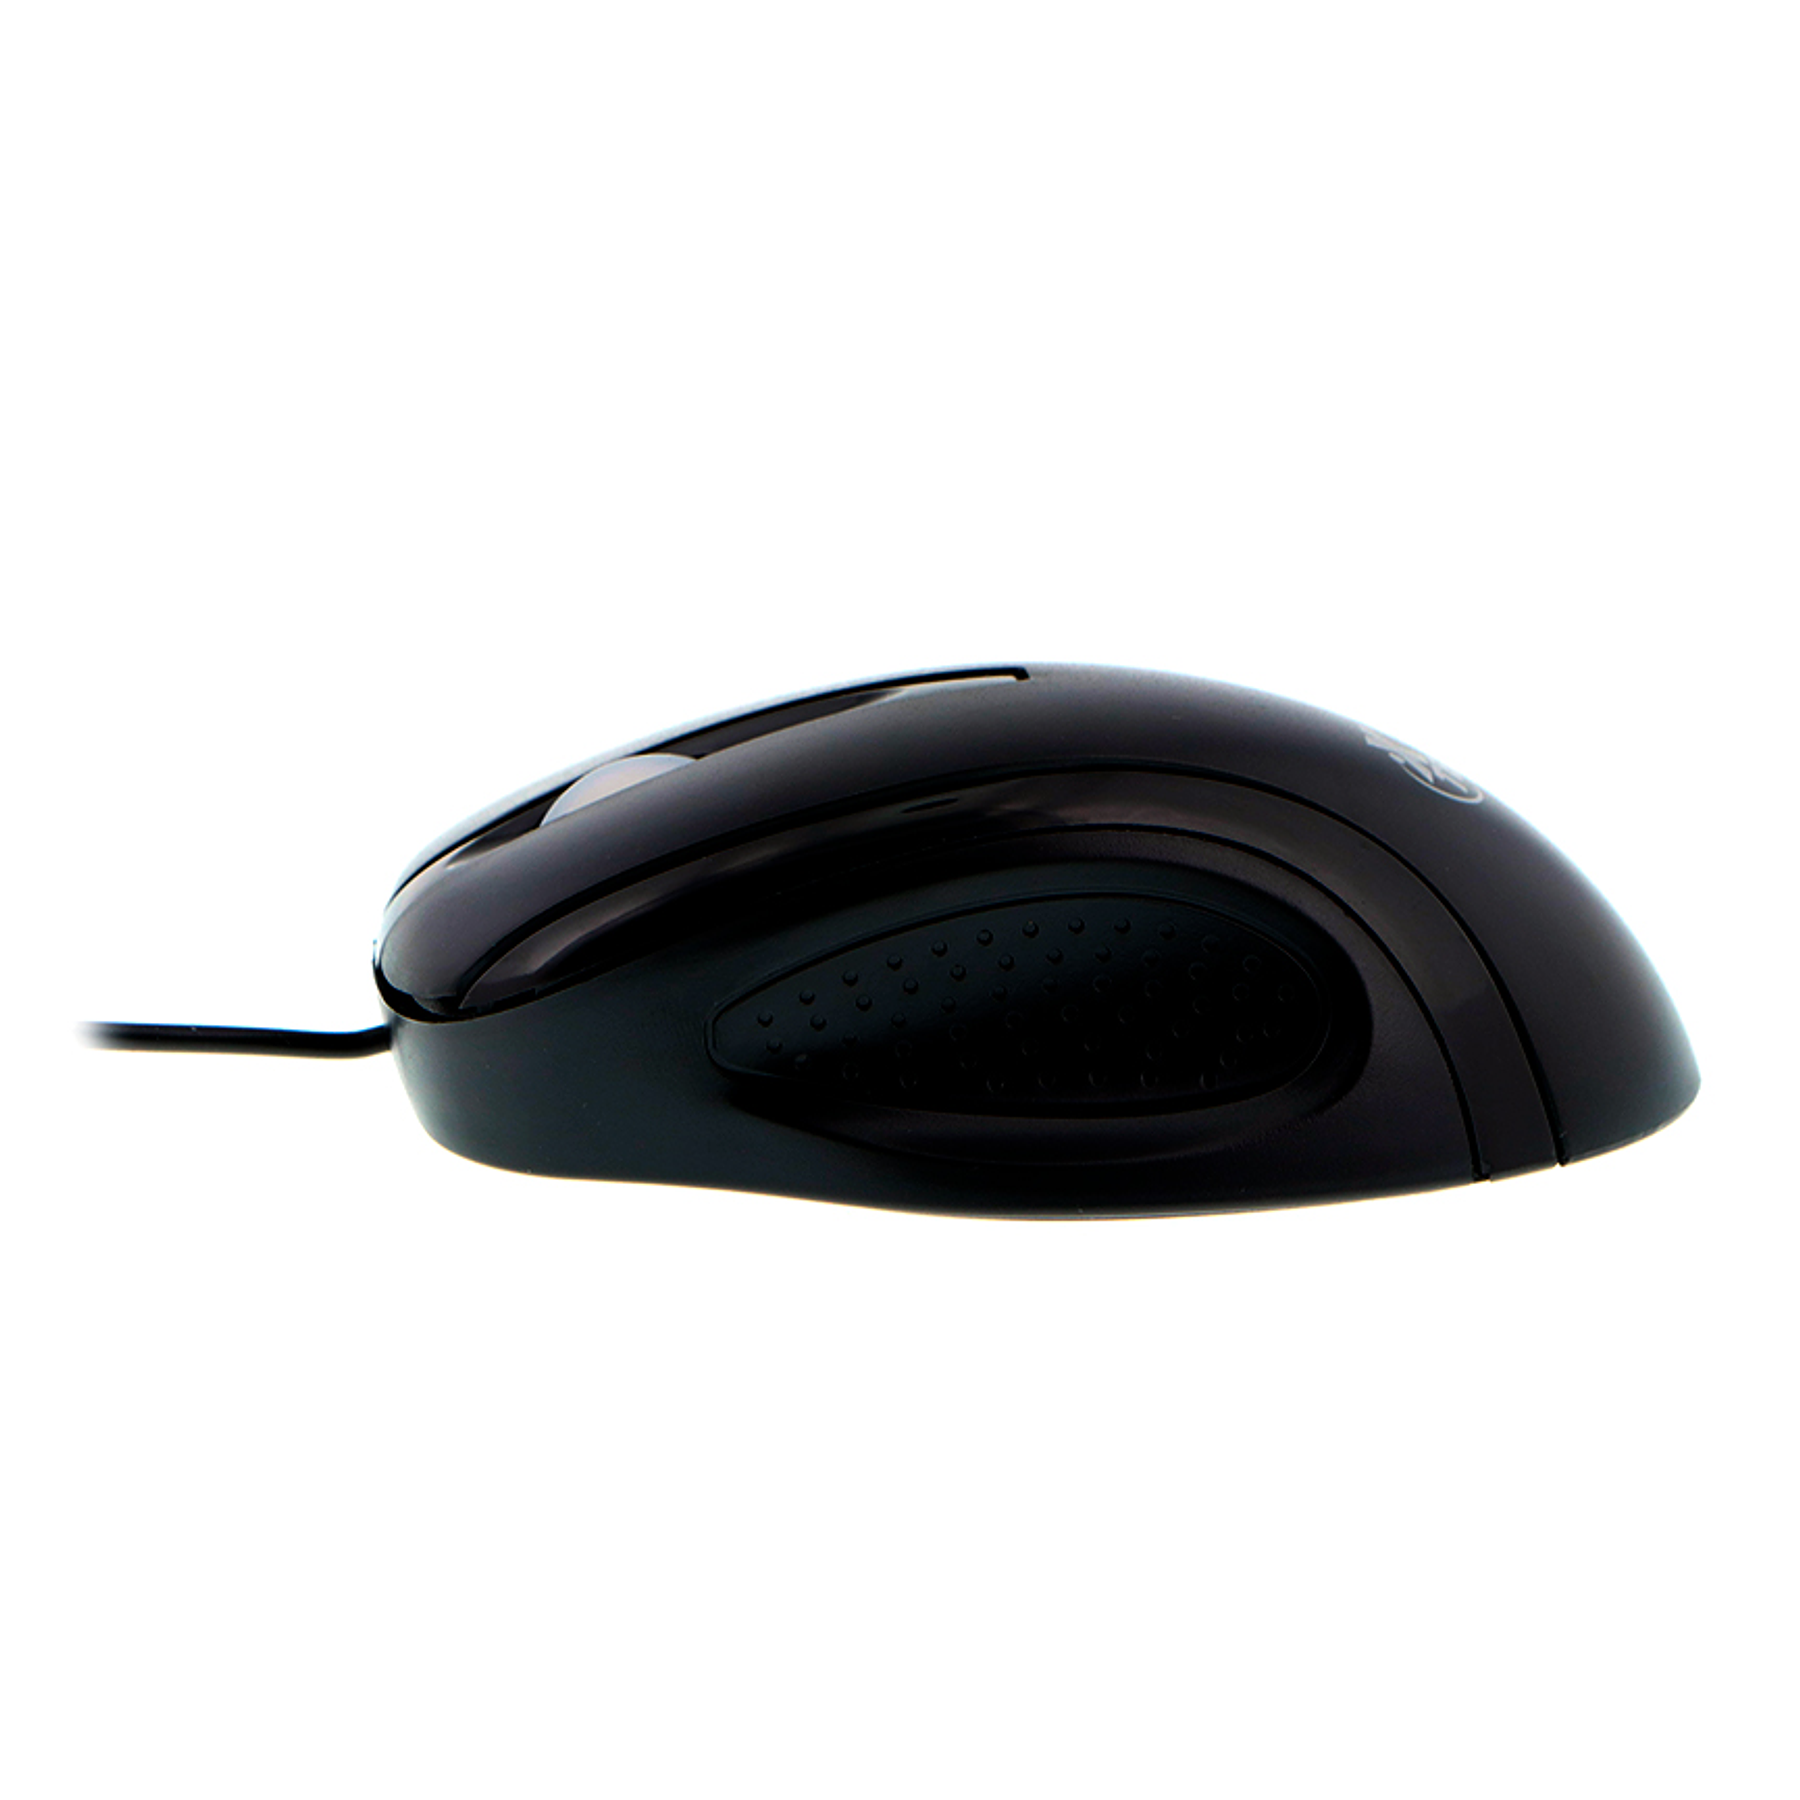 XTech Mouse 3D de tres botones con cable